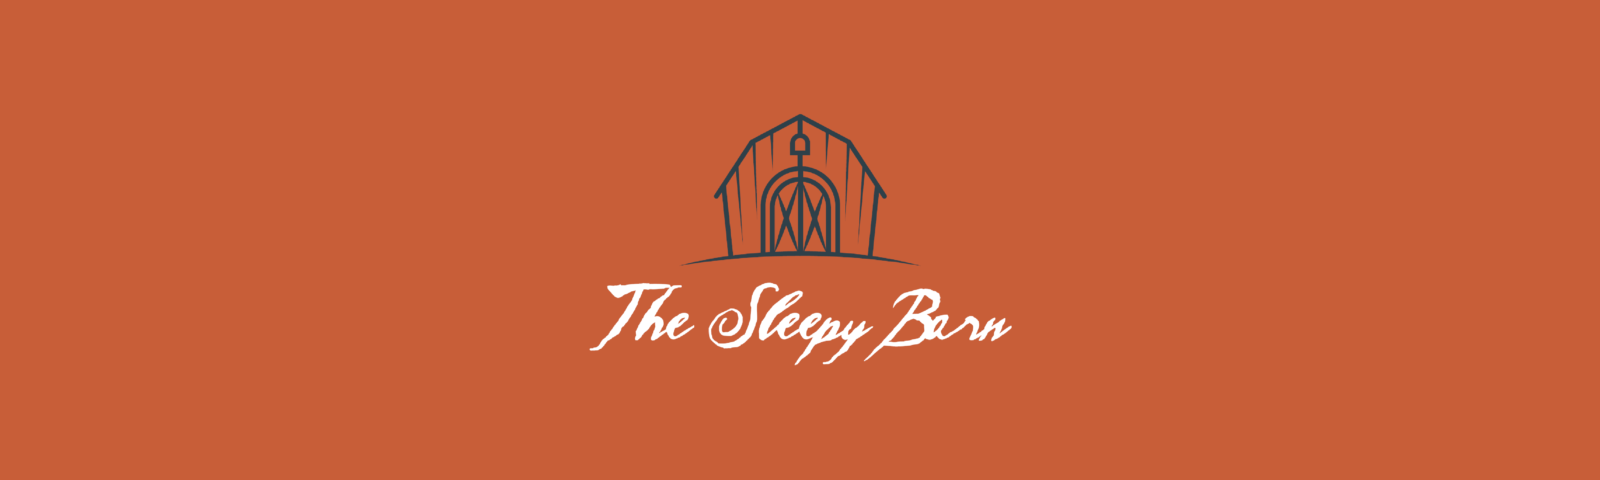 The Sleepy Barn